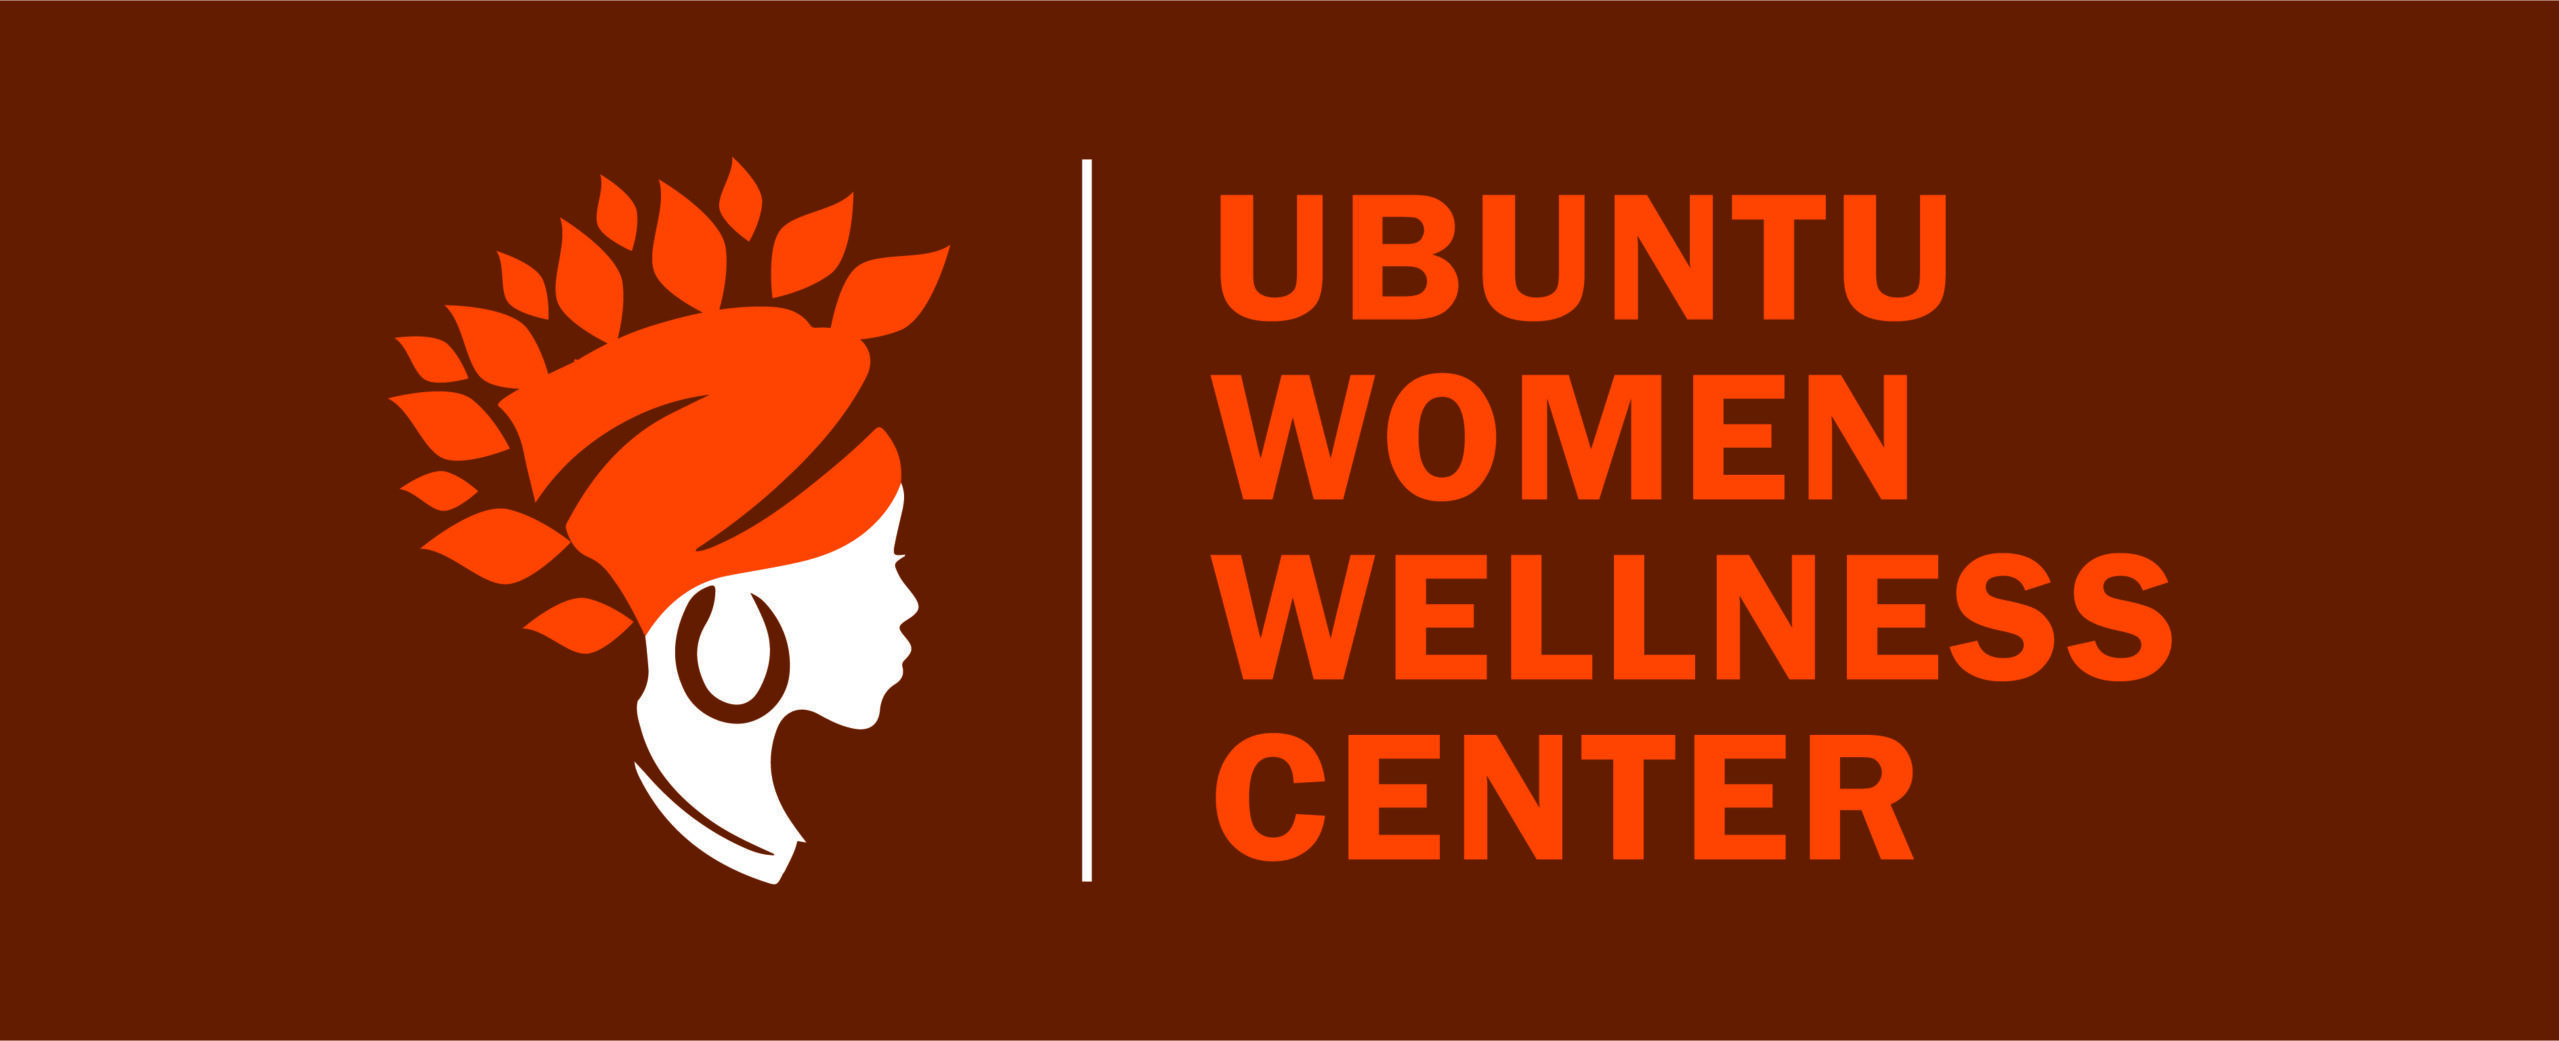 Ubuntu Women Wellness